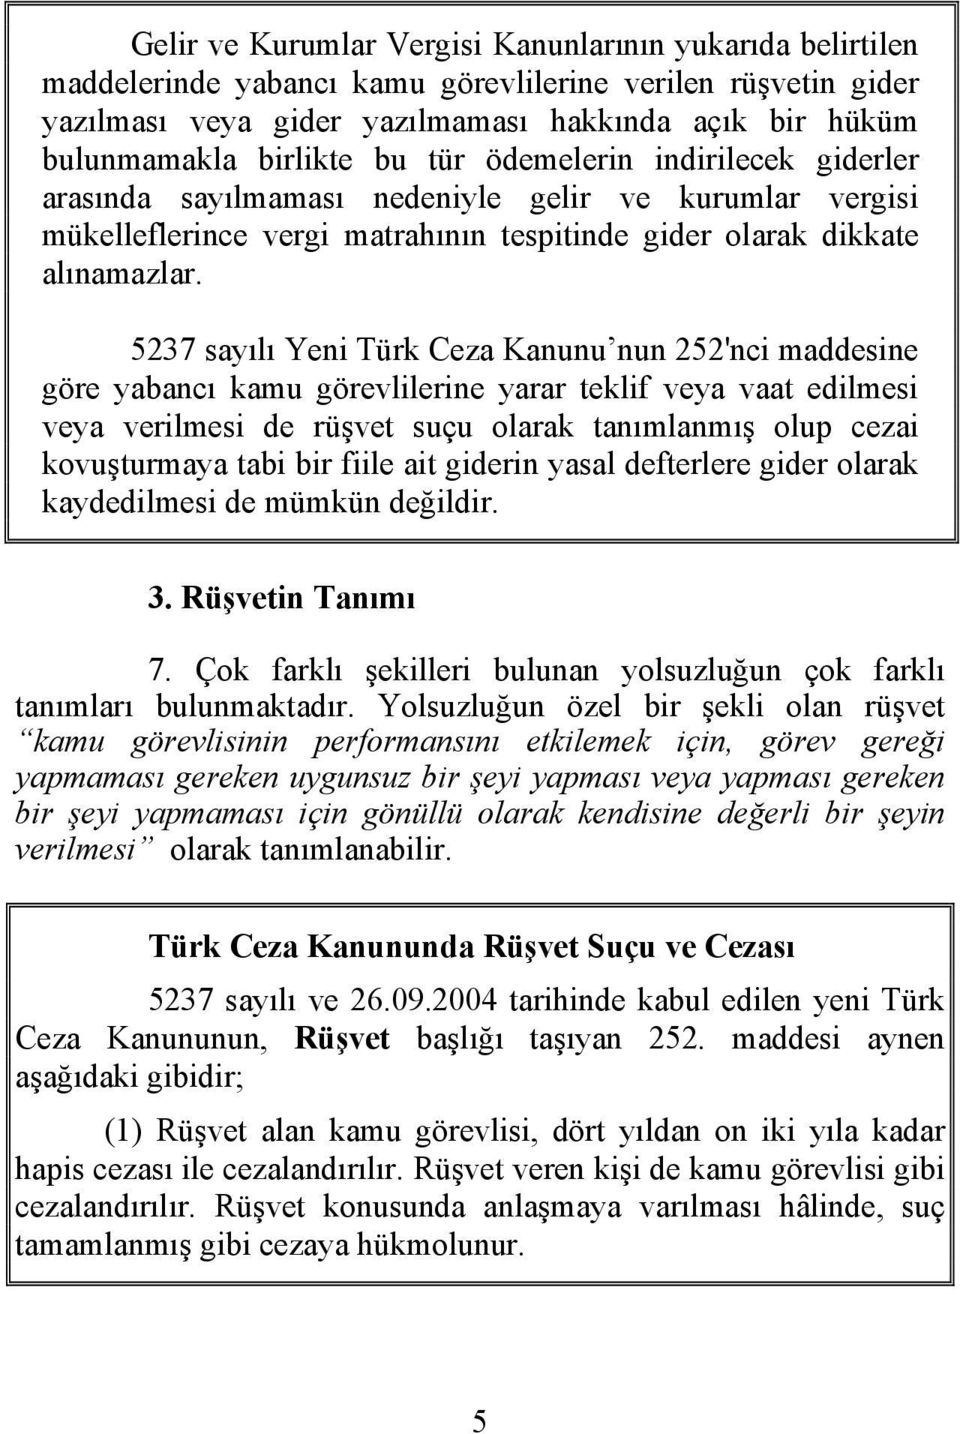 5237 sayılı Yeni Türk Ceza Kanunu nun 252'nci maddesine göre yabancı kamu görevlilerine yarar teklif veya vaat edilmesi veya verilmesi de rüşvet suçu olarak tanımlanmış olup cezai kovuşturmaya tabi